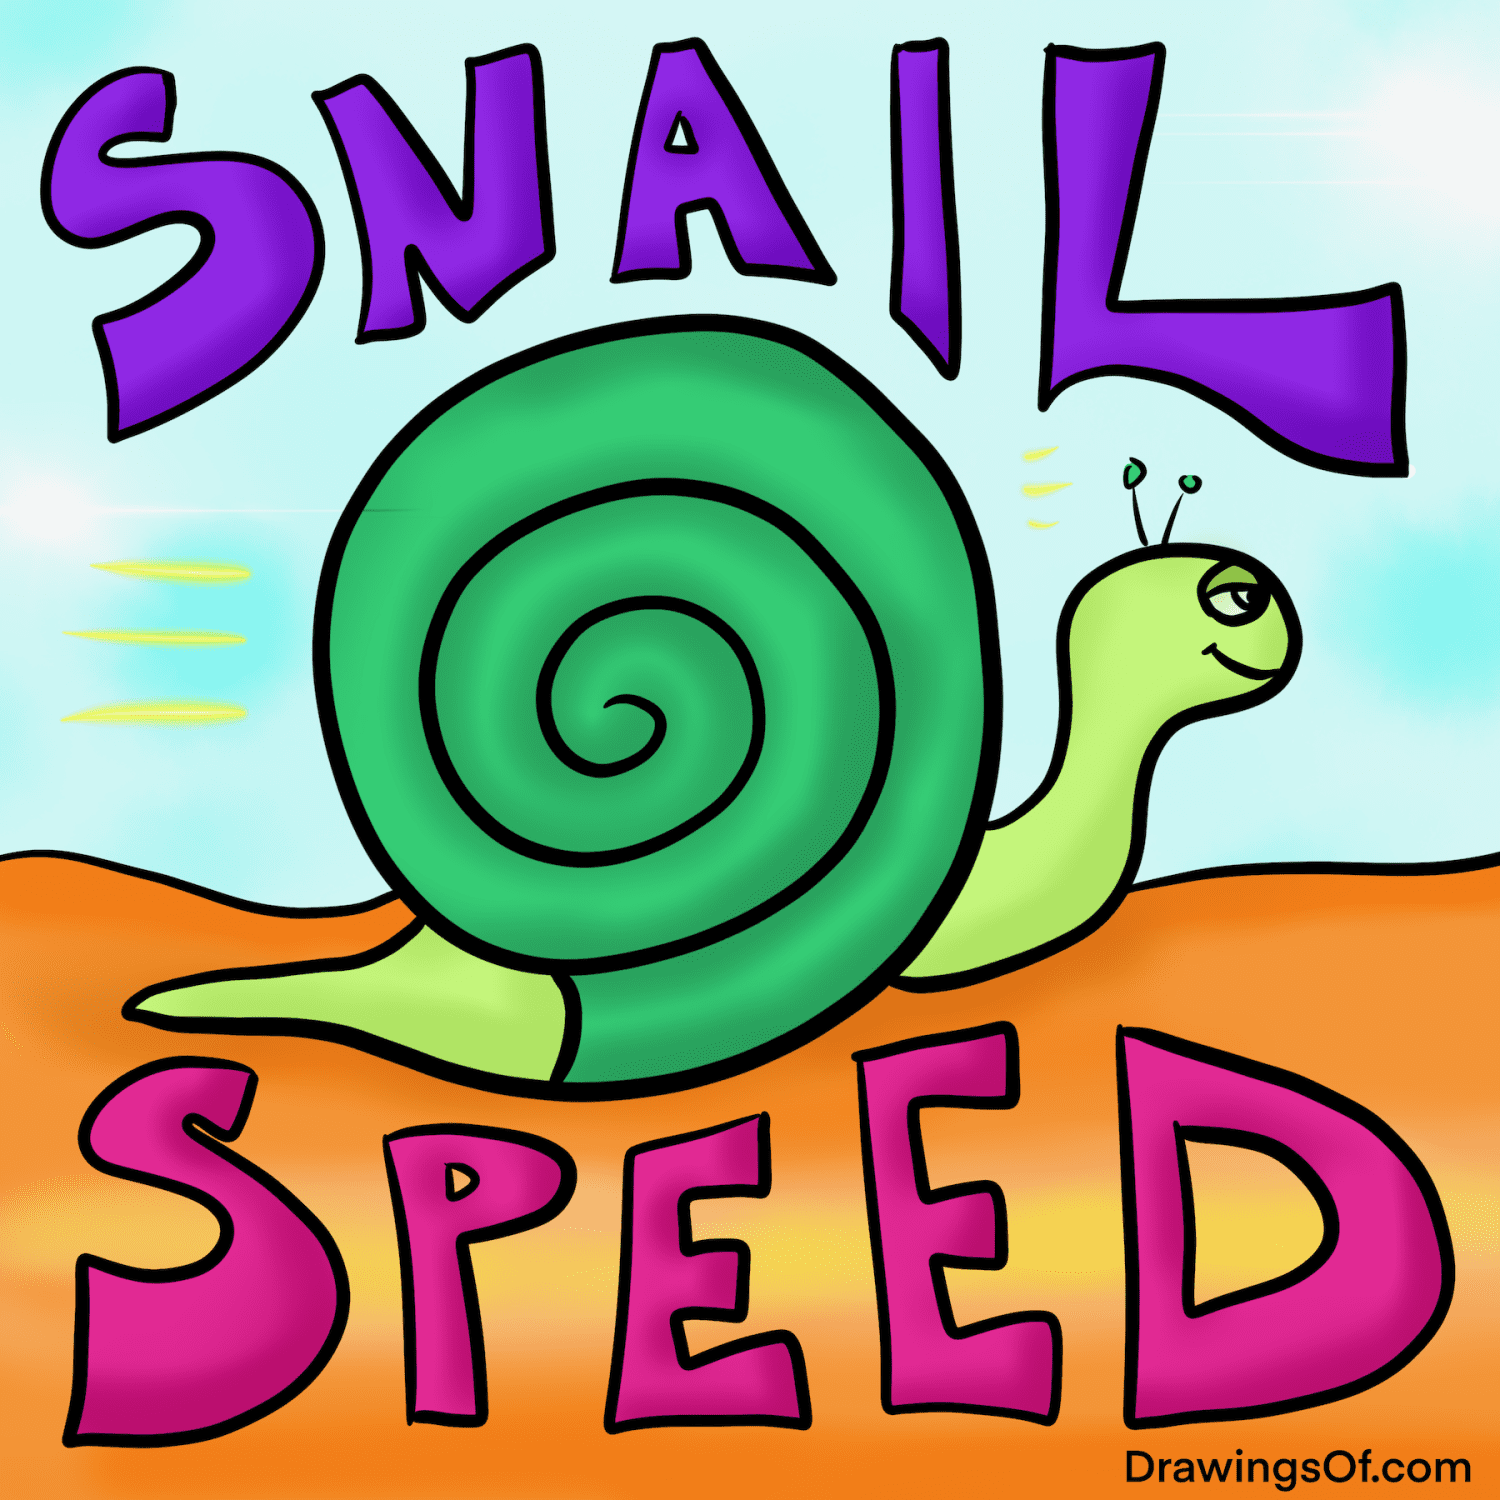 Cute Snail Drawing: Easy Cartoon Art - Drawings Of...